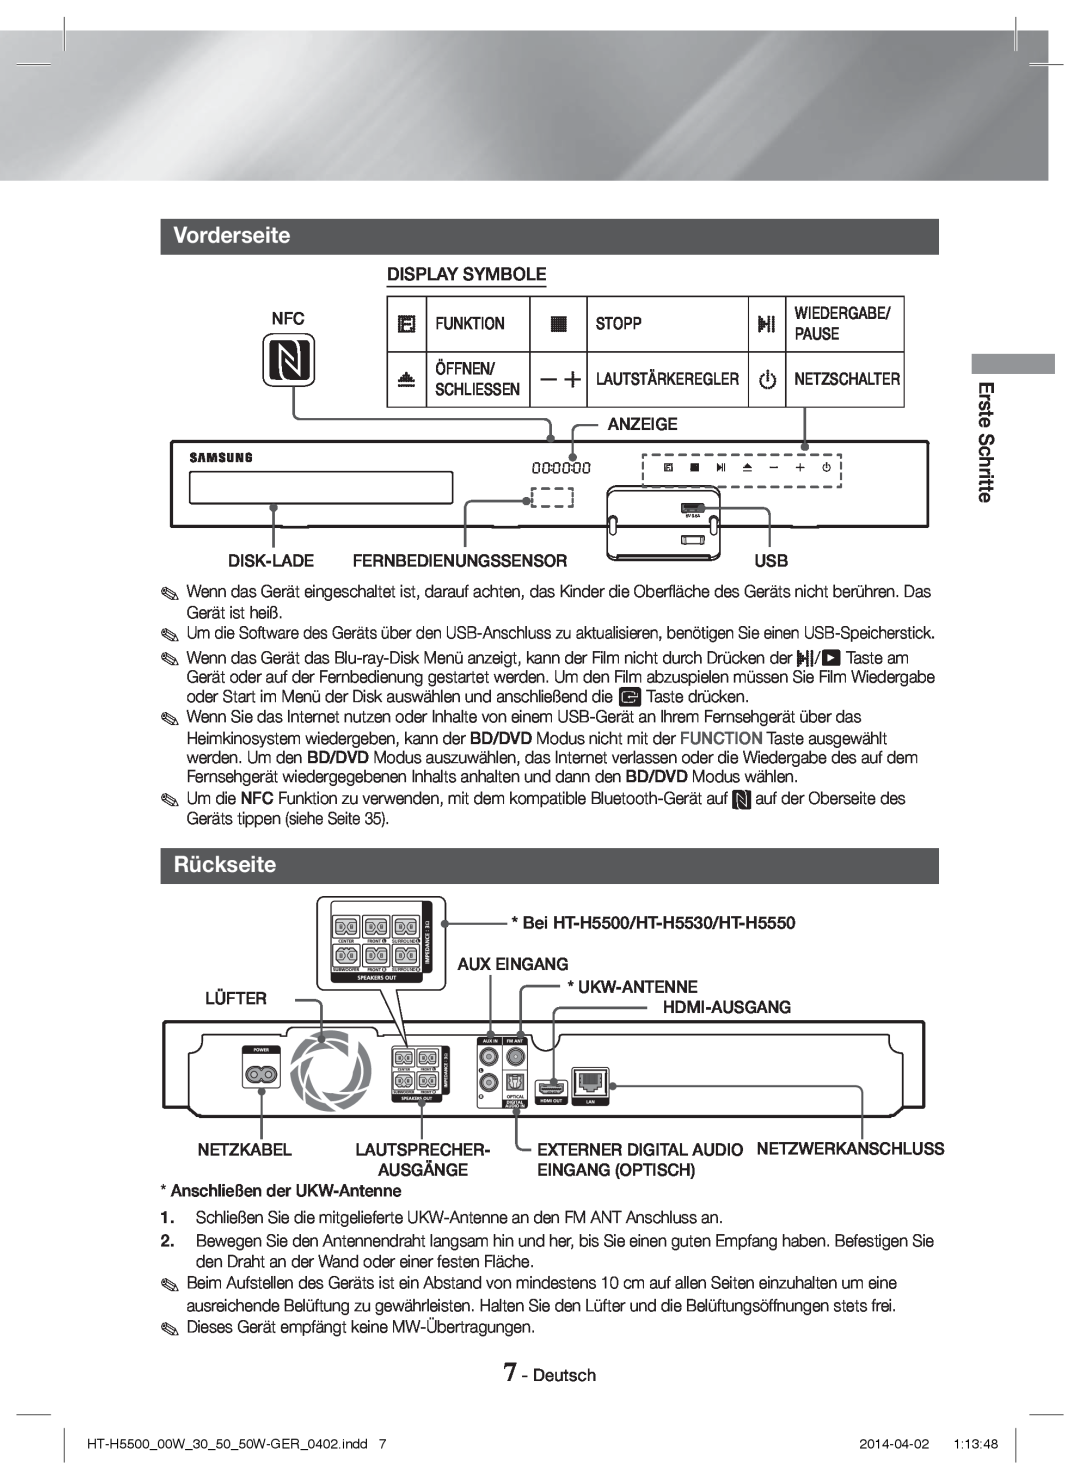 Samsung HT-H5500W/EN, HT-H5550W/TK, HT-H5530/EN, HT-H5500/EN manual Vorderseite, Rückseite, Display Symbole, Erste Schritte 